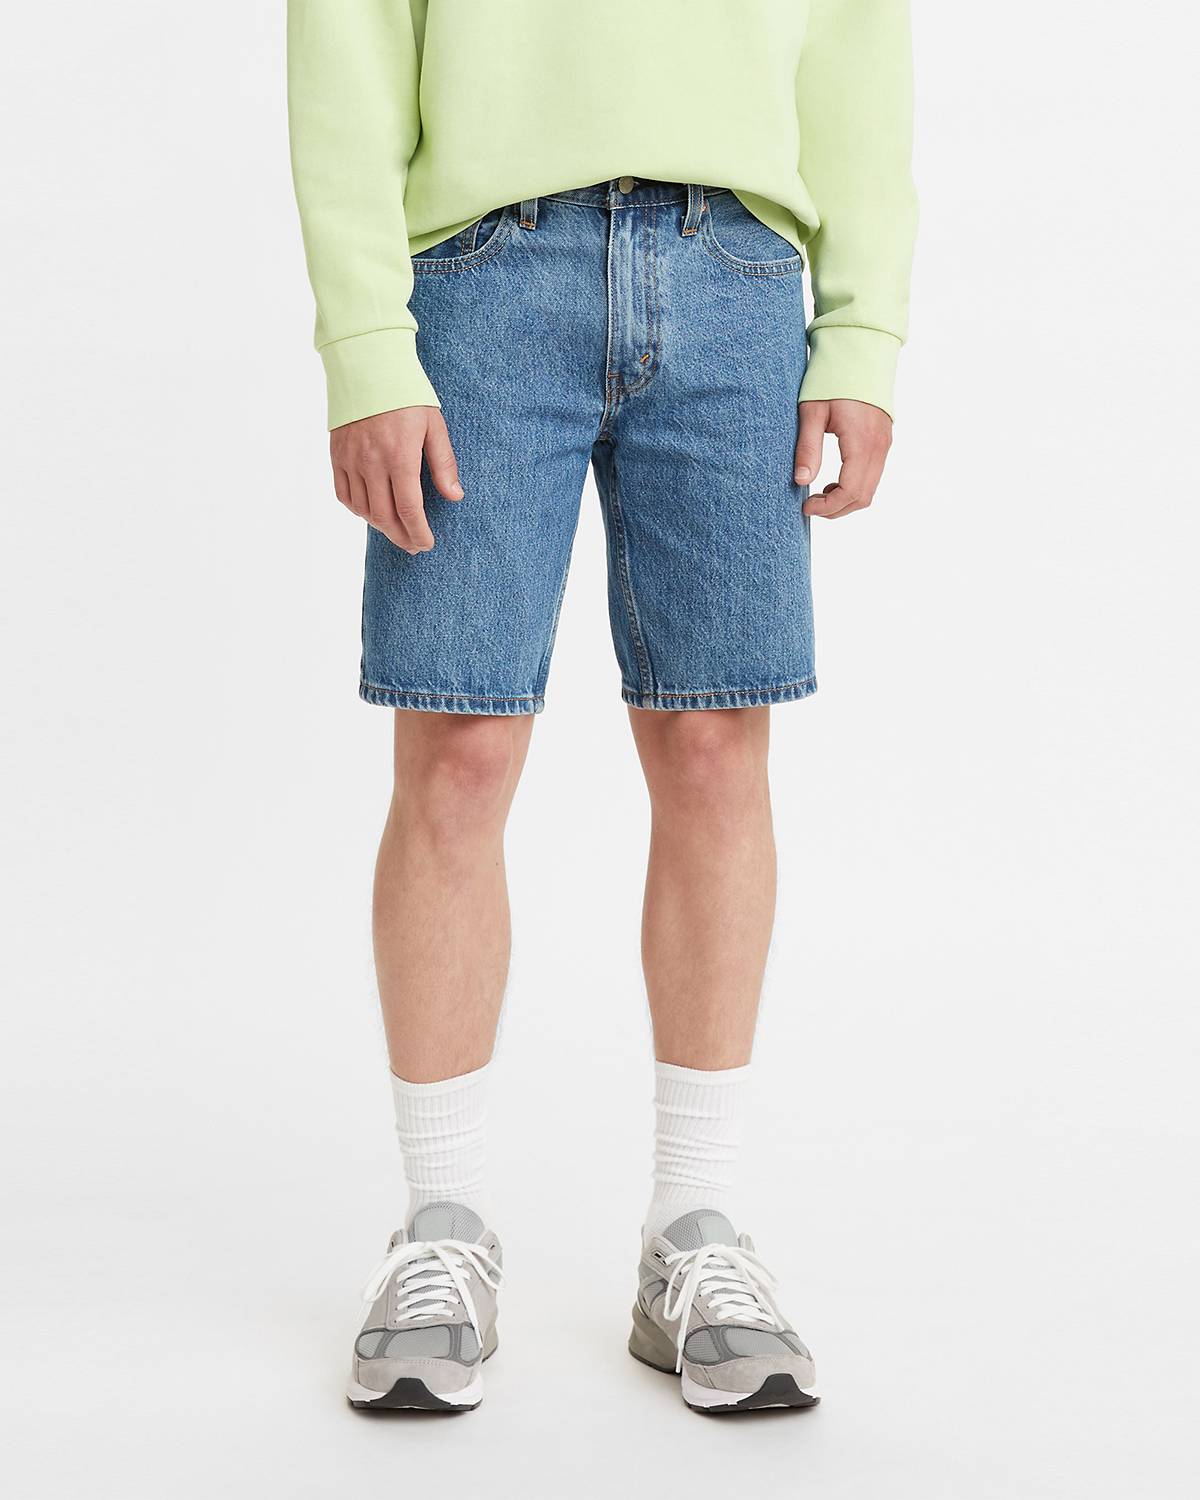 Model wearing jean shorts